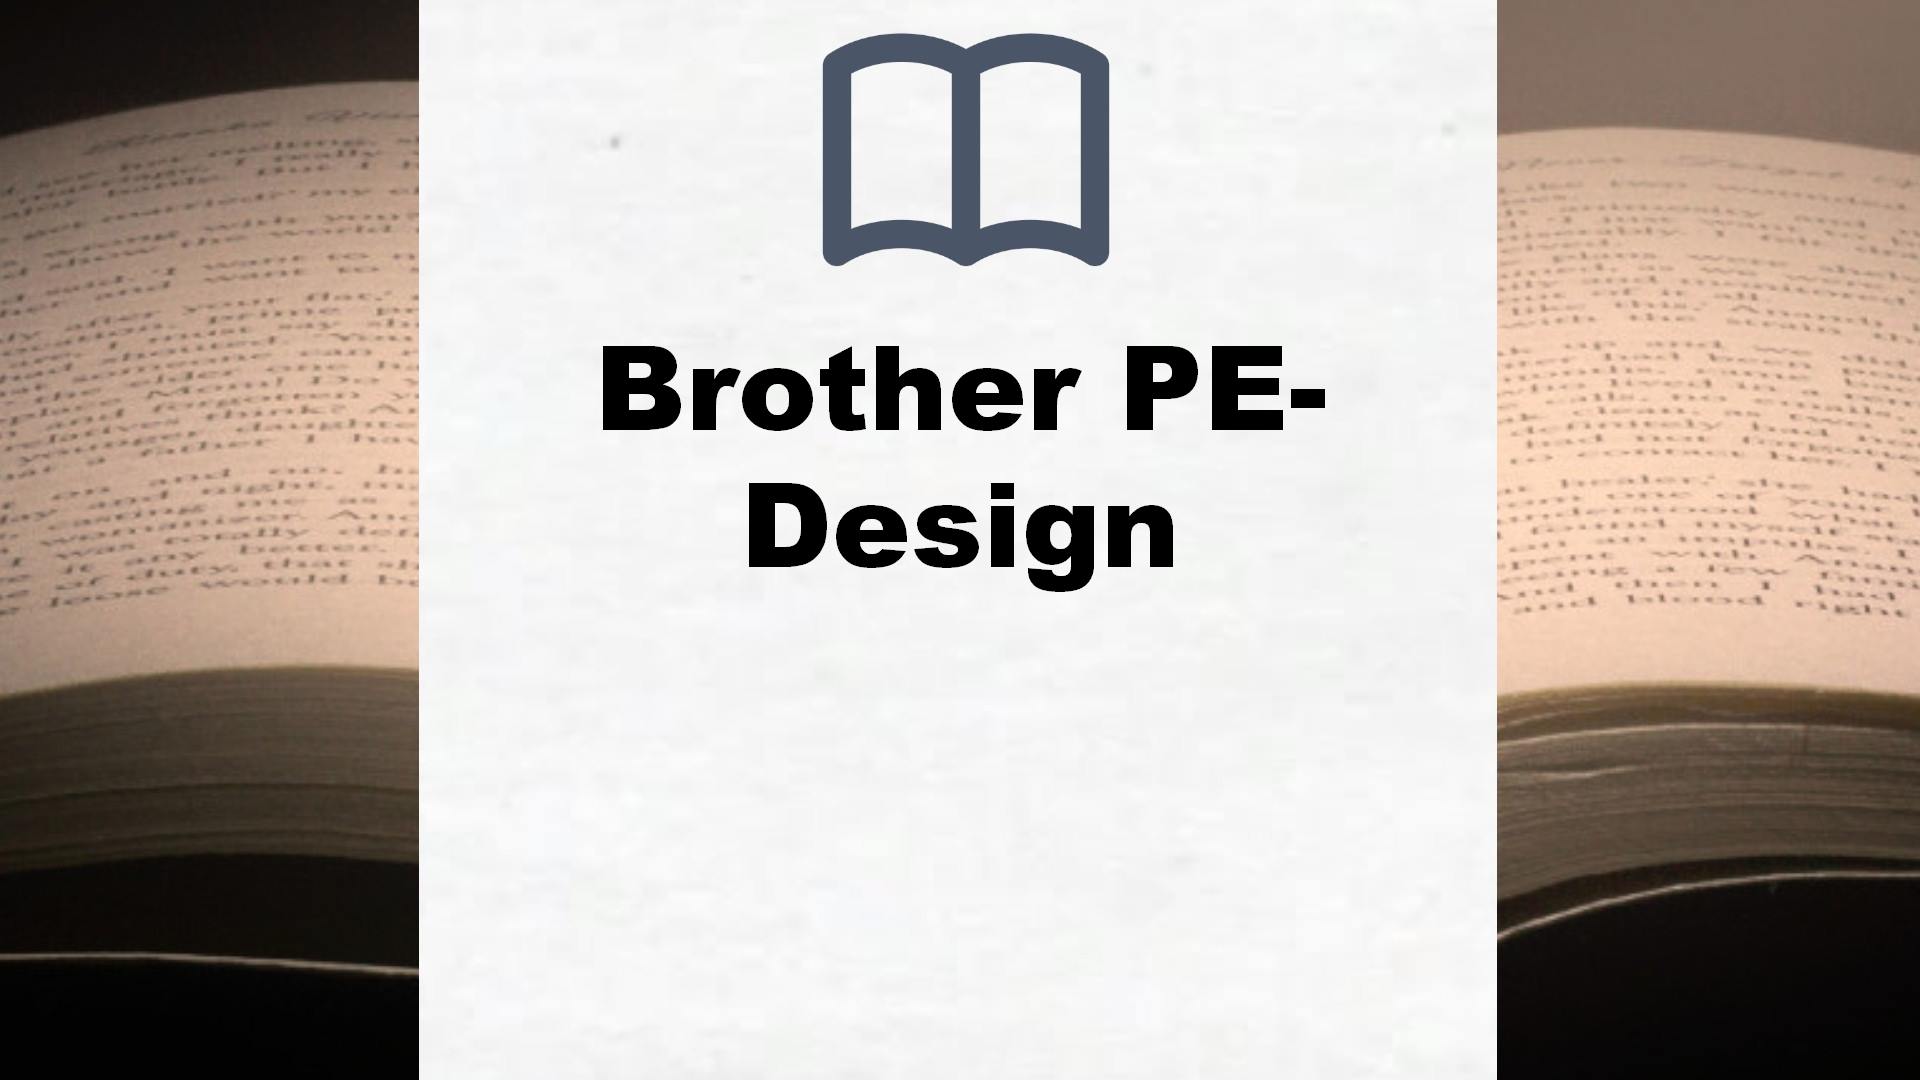 Bücher über Brother PE-Design